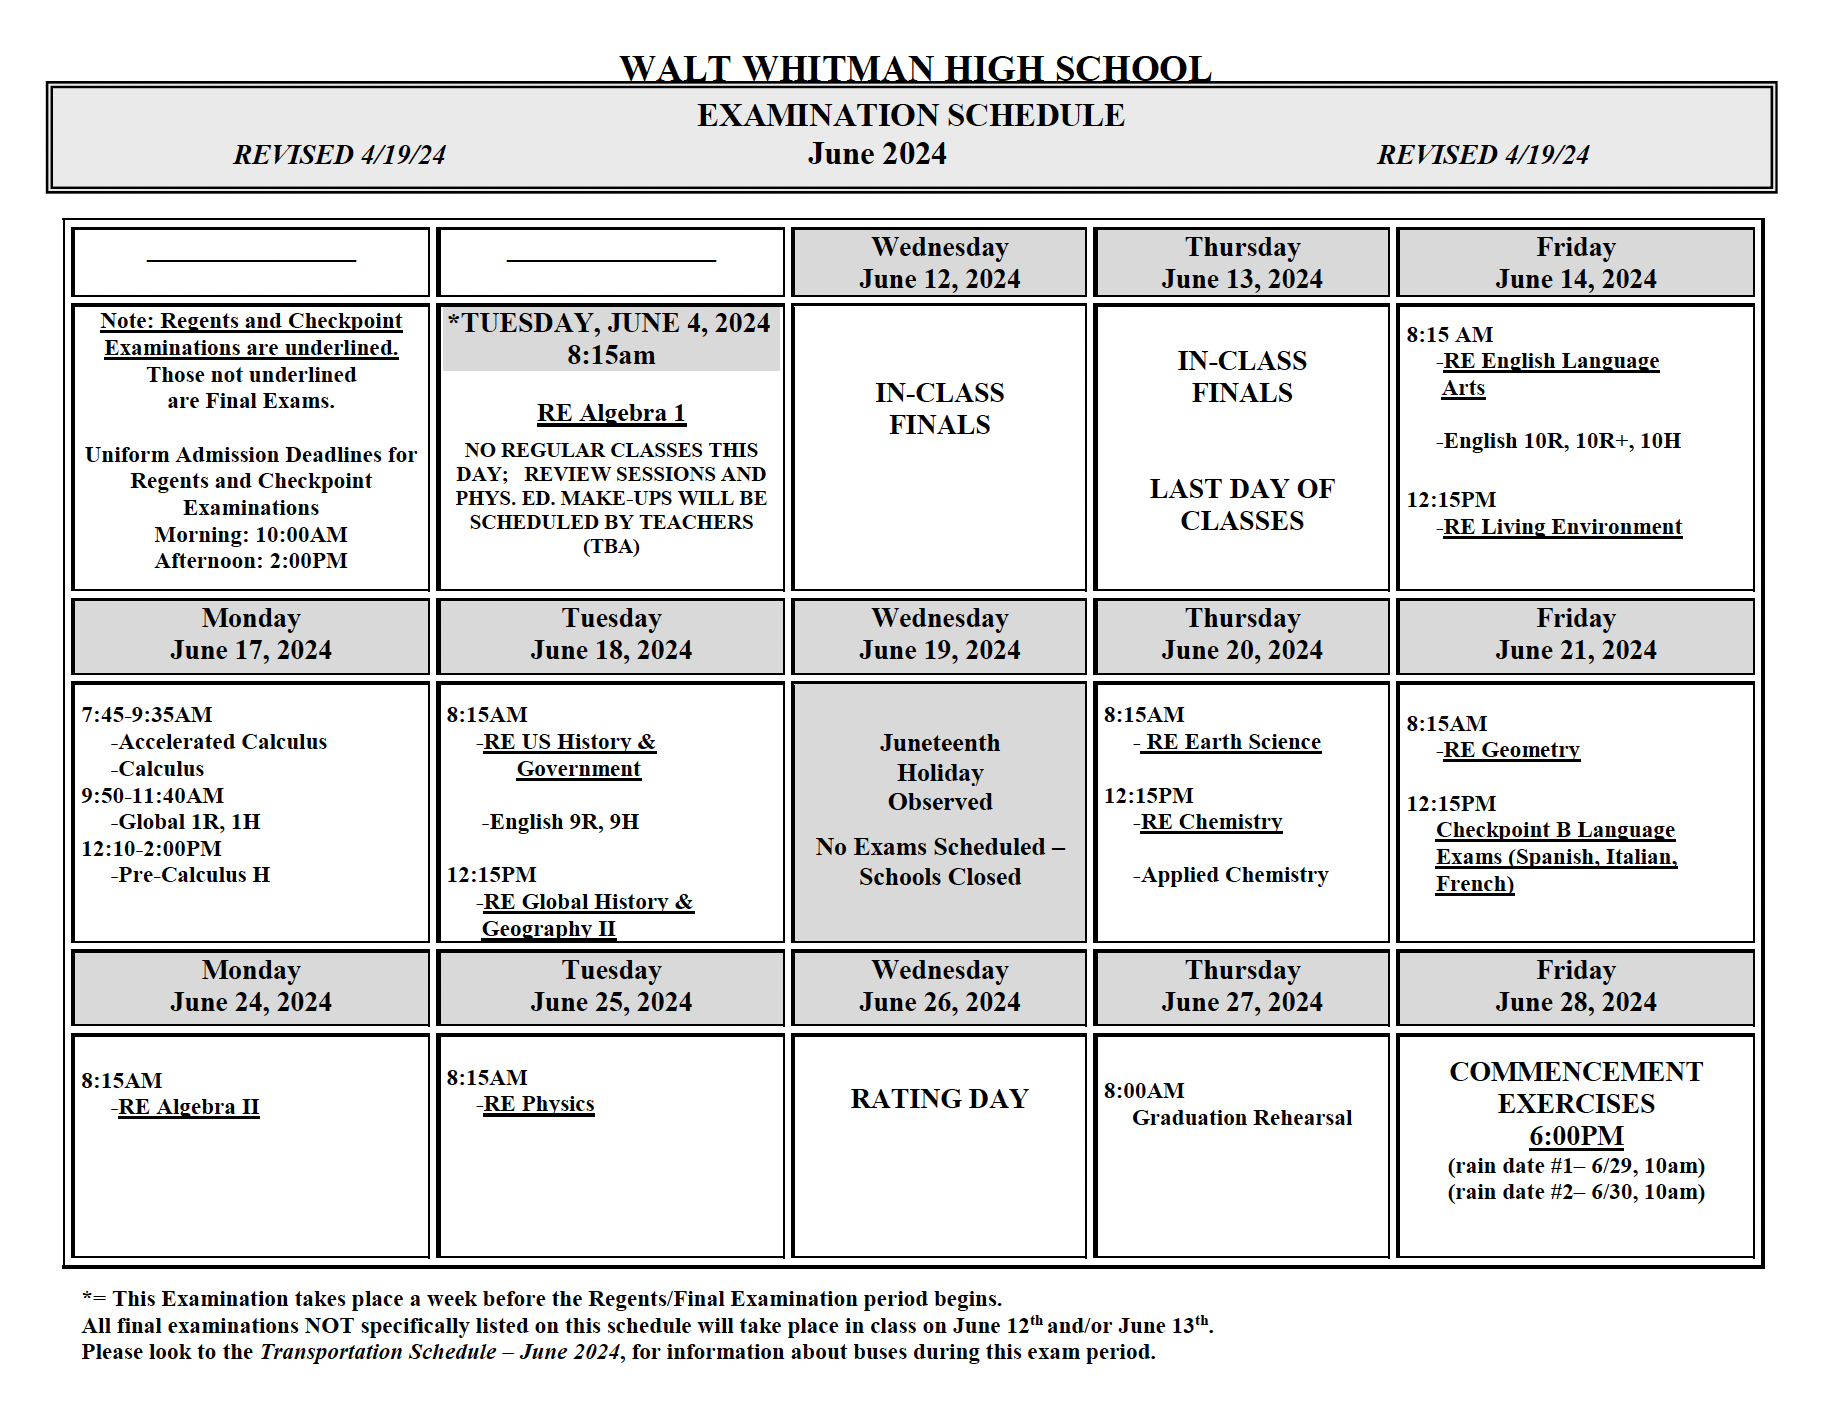 WW-June2024 Exam Schedule